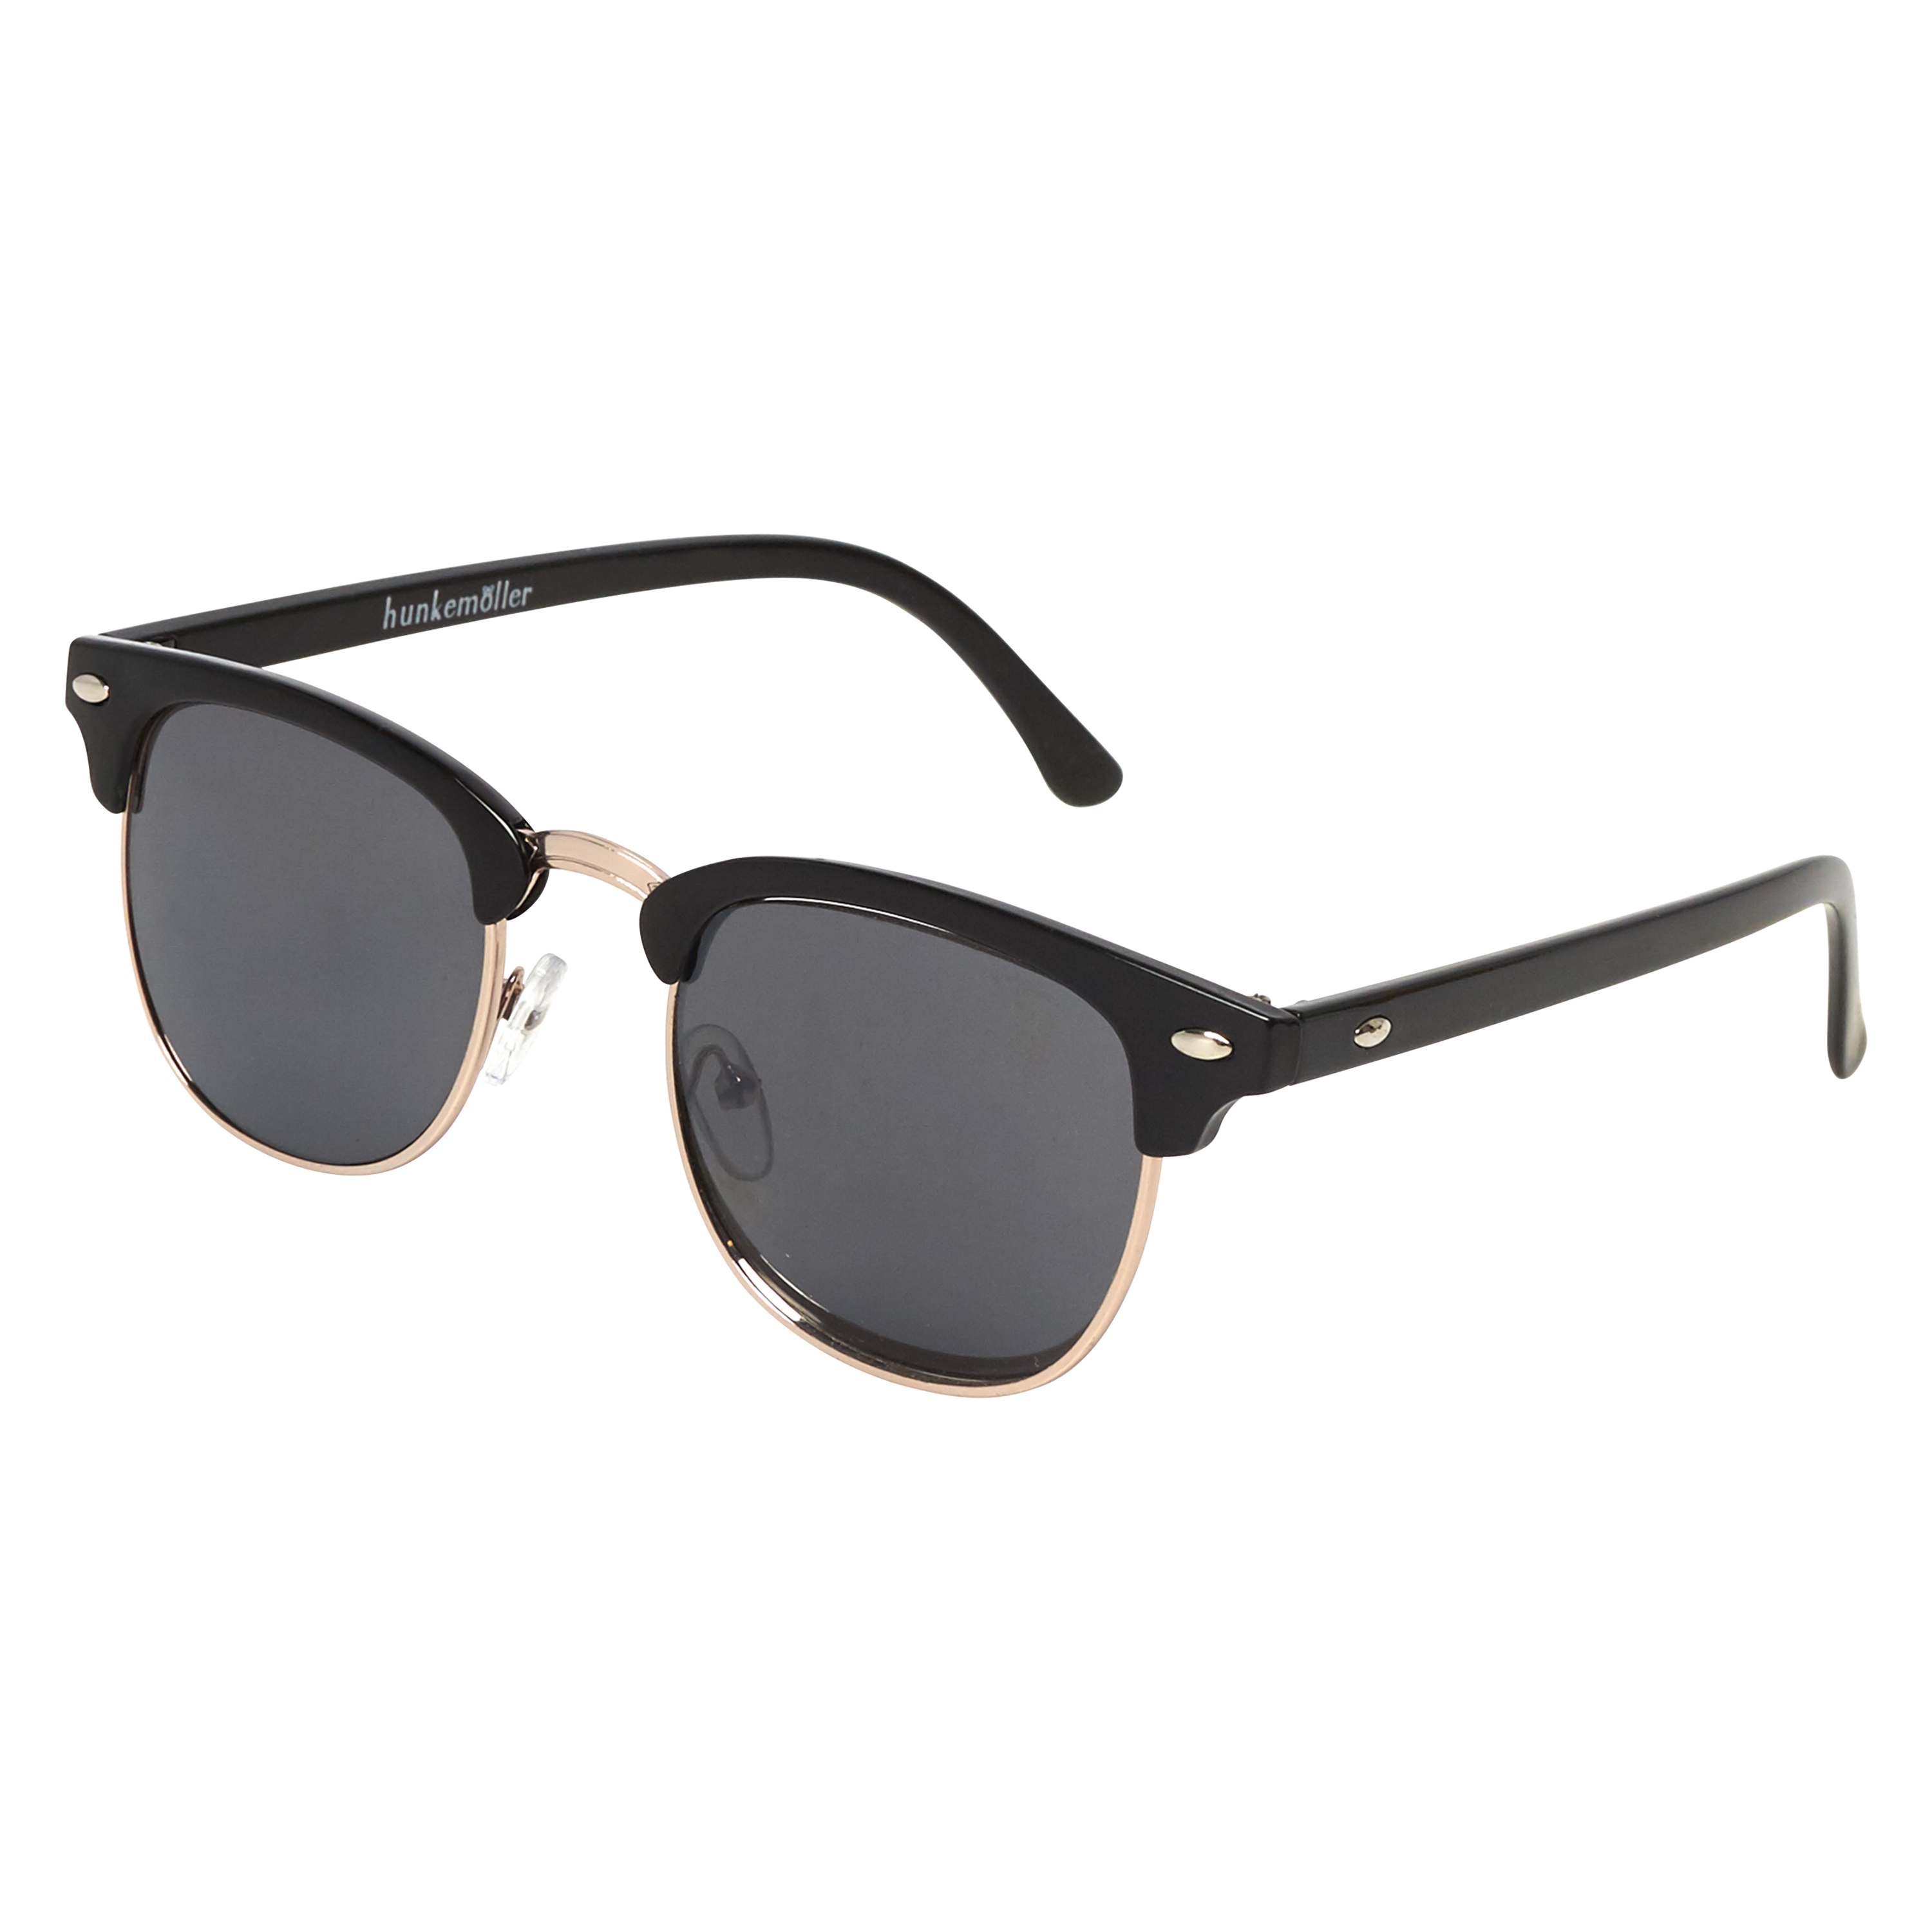 Club Master Sunglasses, Svart, main